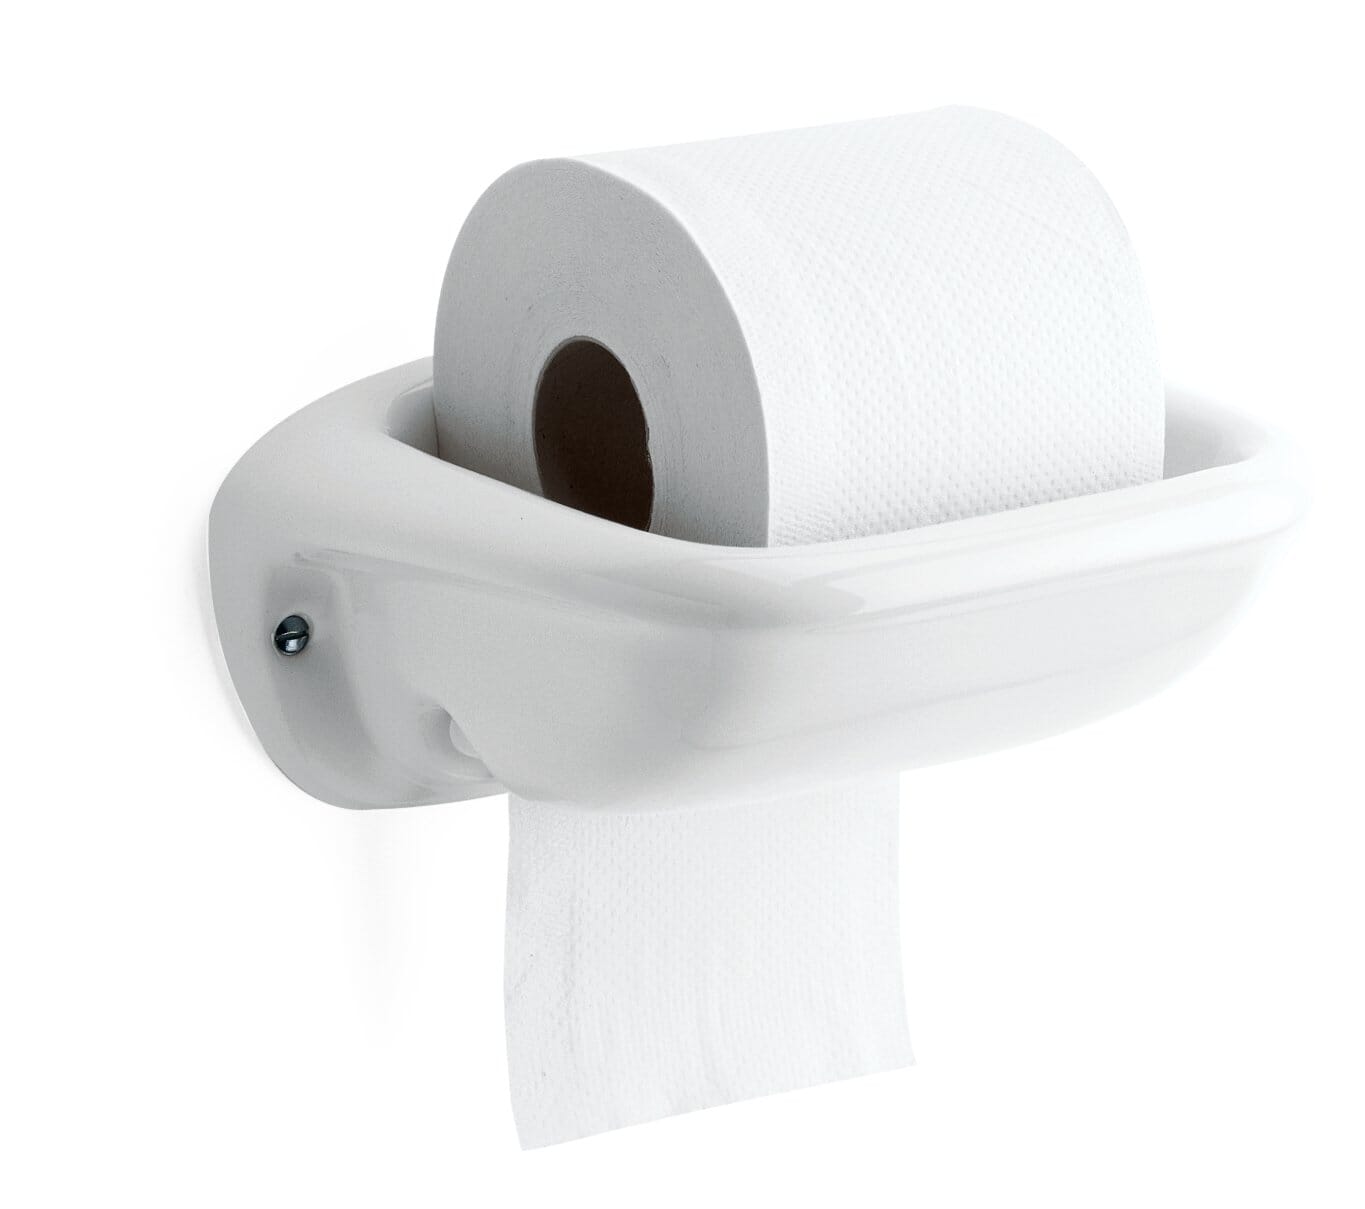 Paper roll holder porcelain